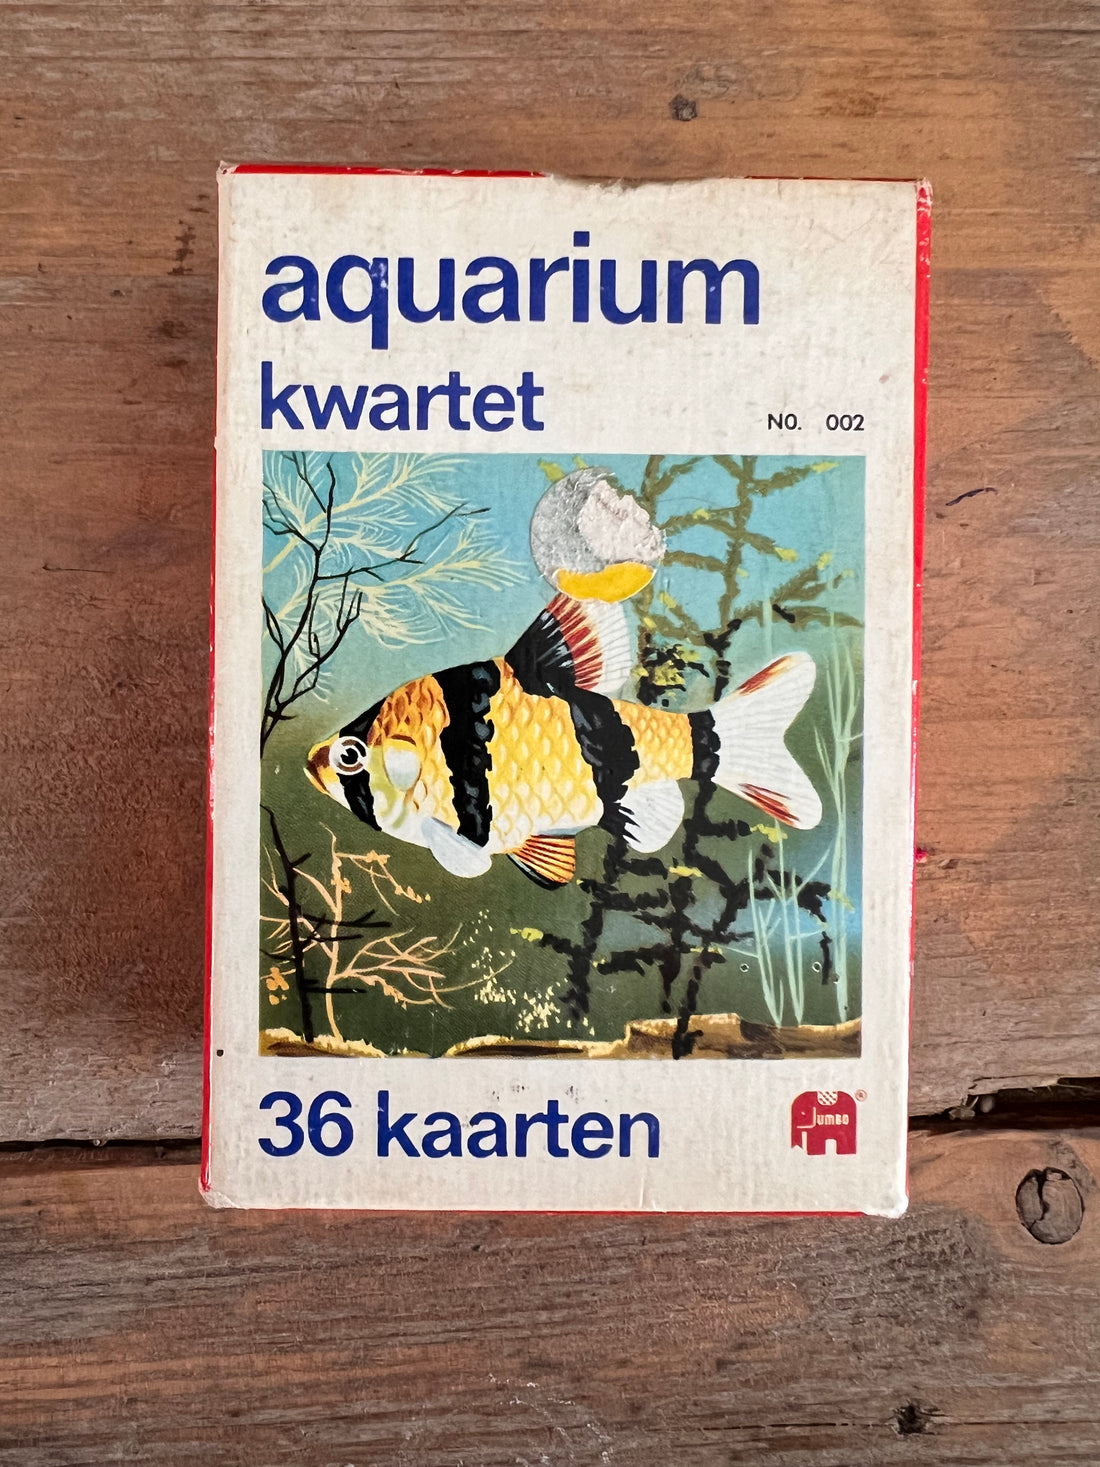 Vintage aquariumkwartet uit 1965 van Jumbo